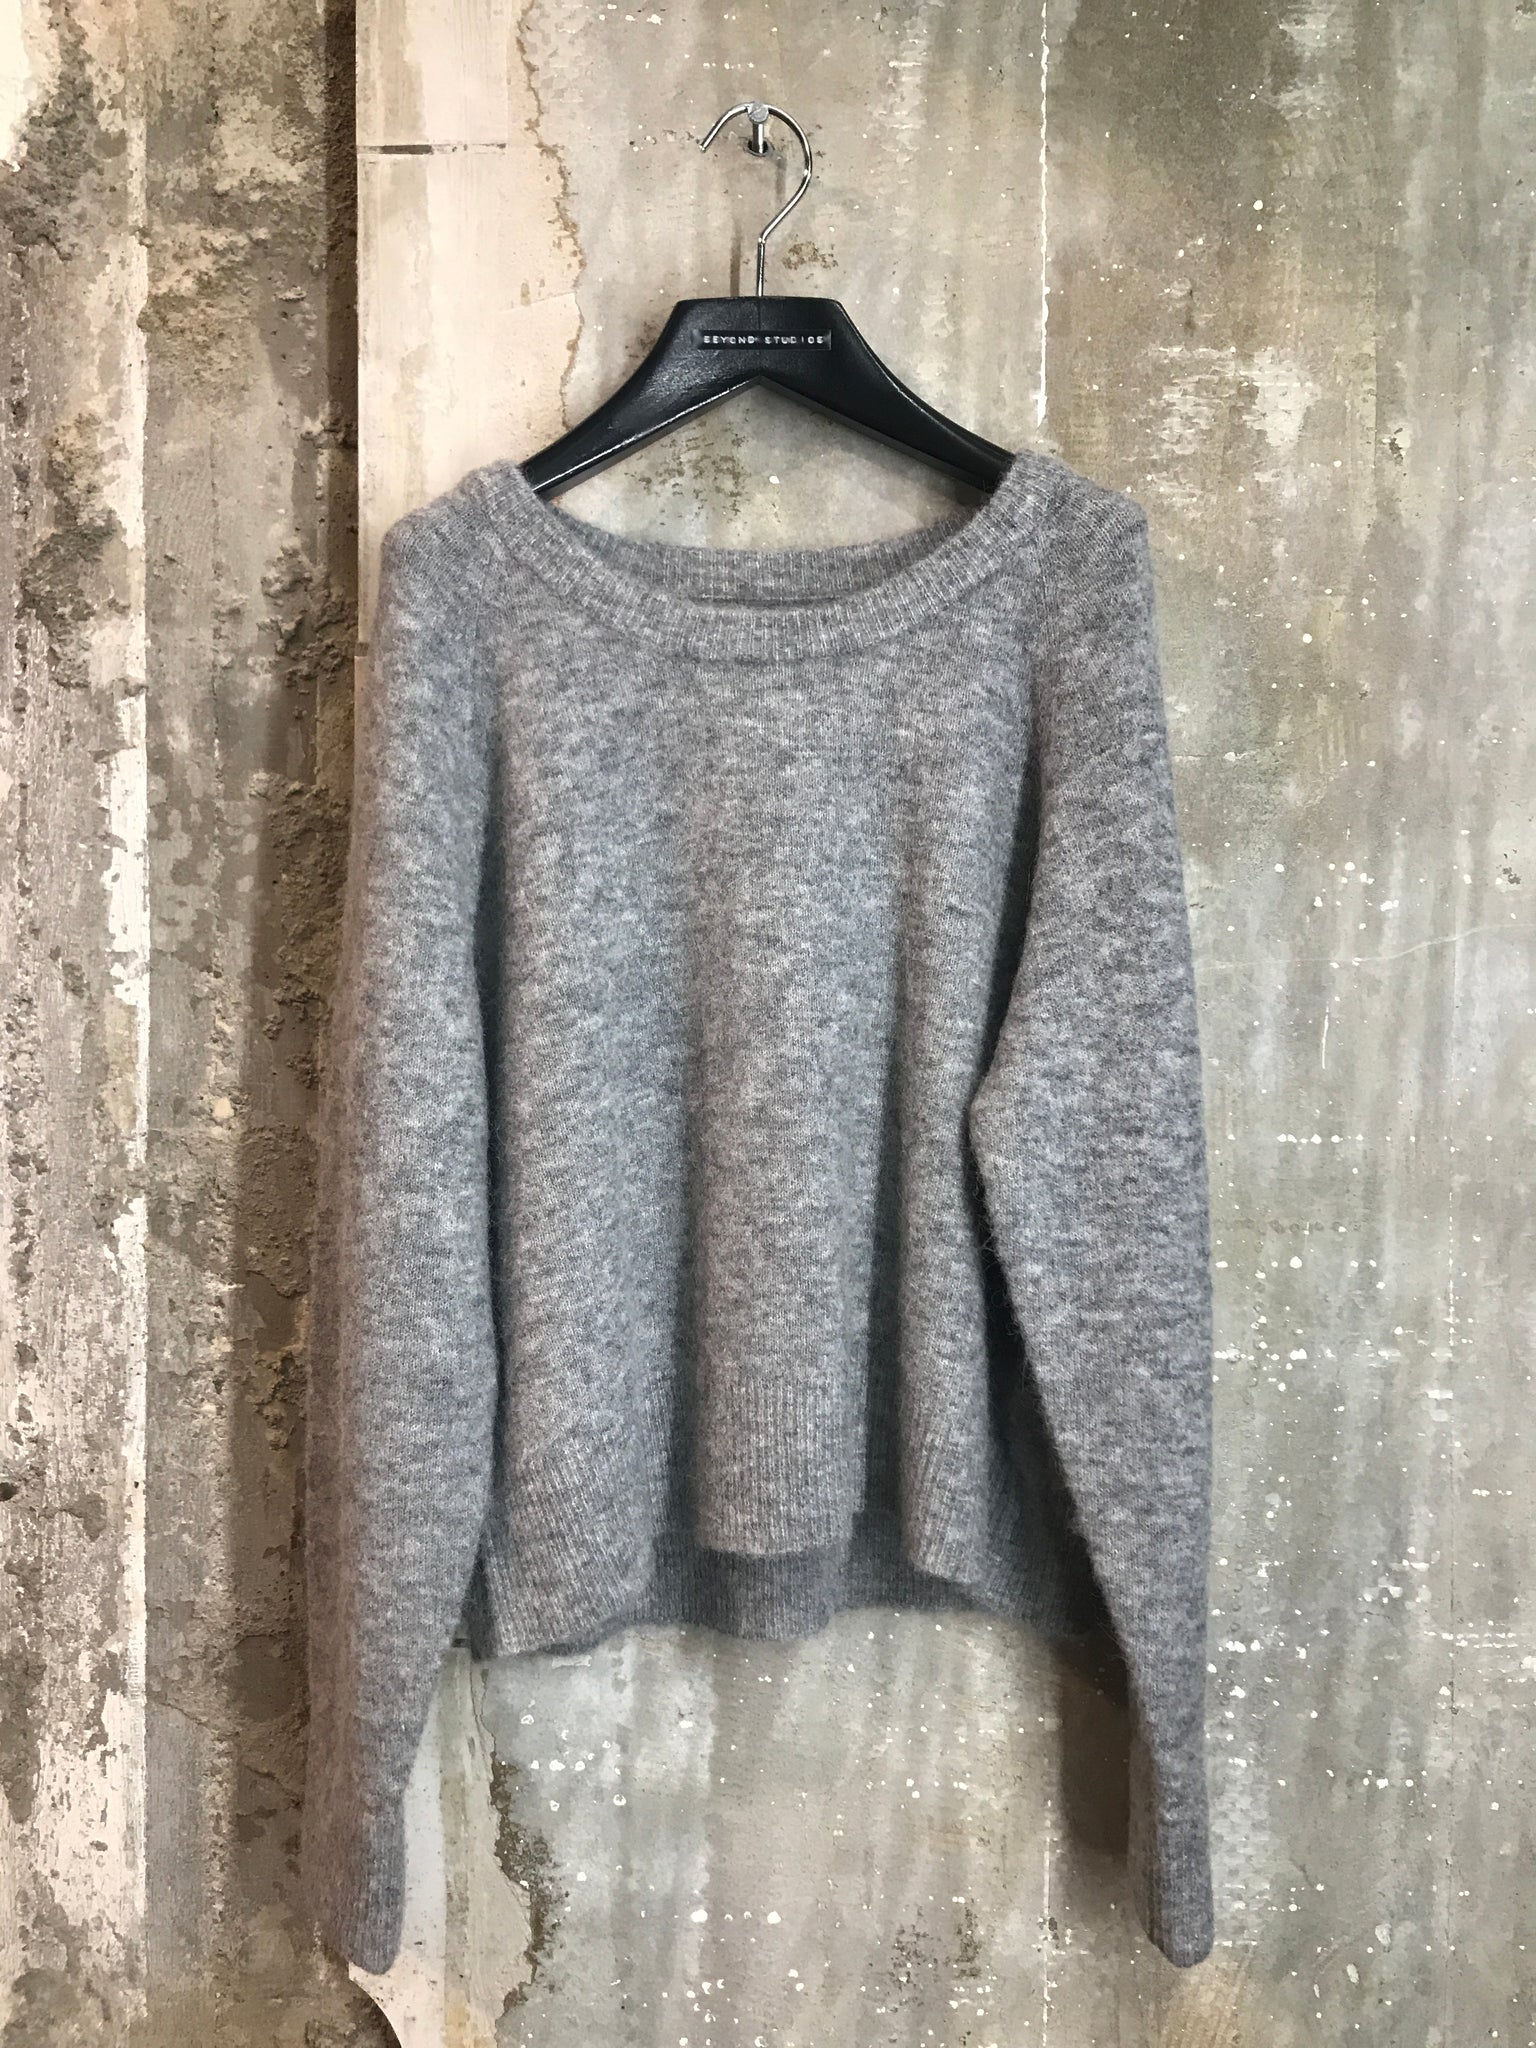 Nor on short alpaca sweater in grey melange